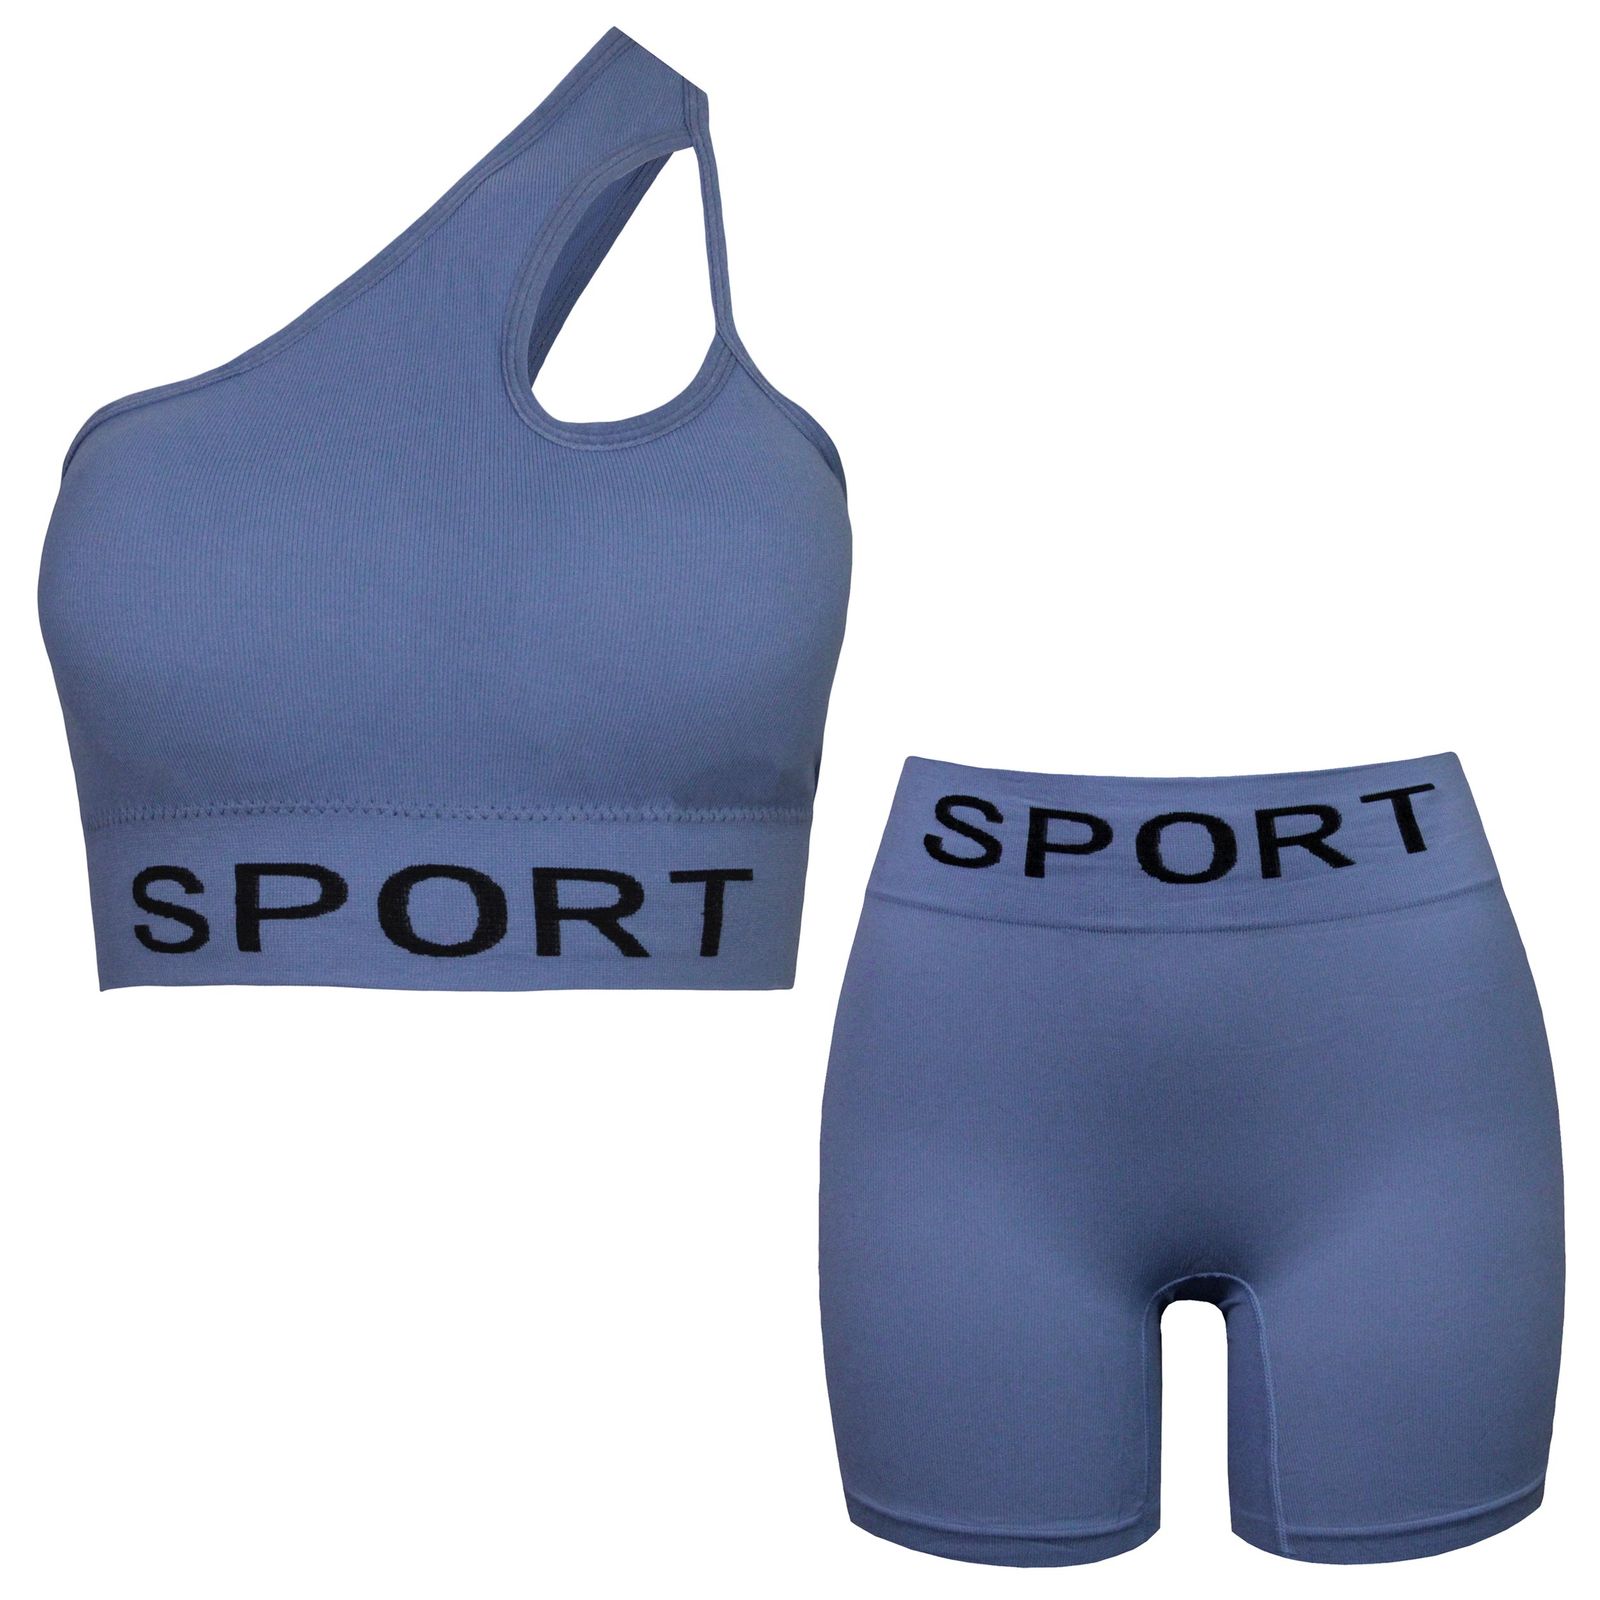 ست نیم تنه و شلوارک ورزشی زنانه ماییلدا مدل 4465 رنگ آبی -  - 1